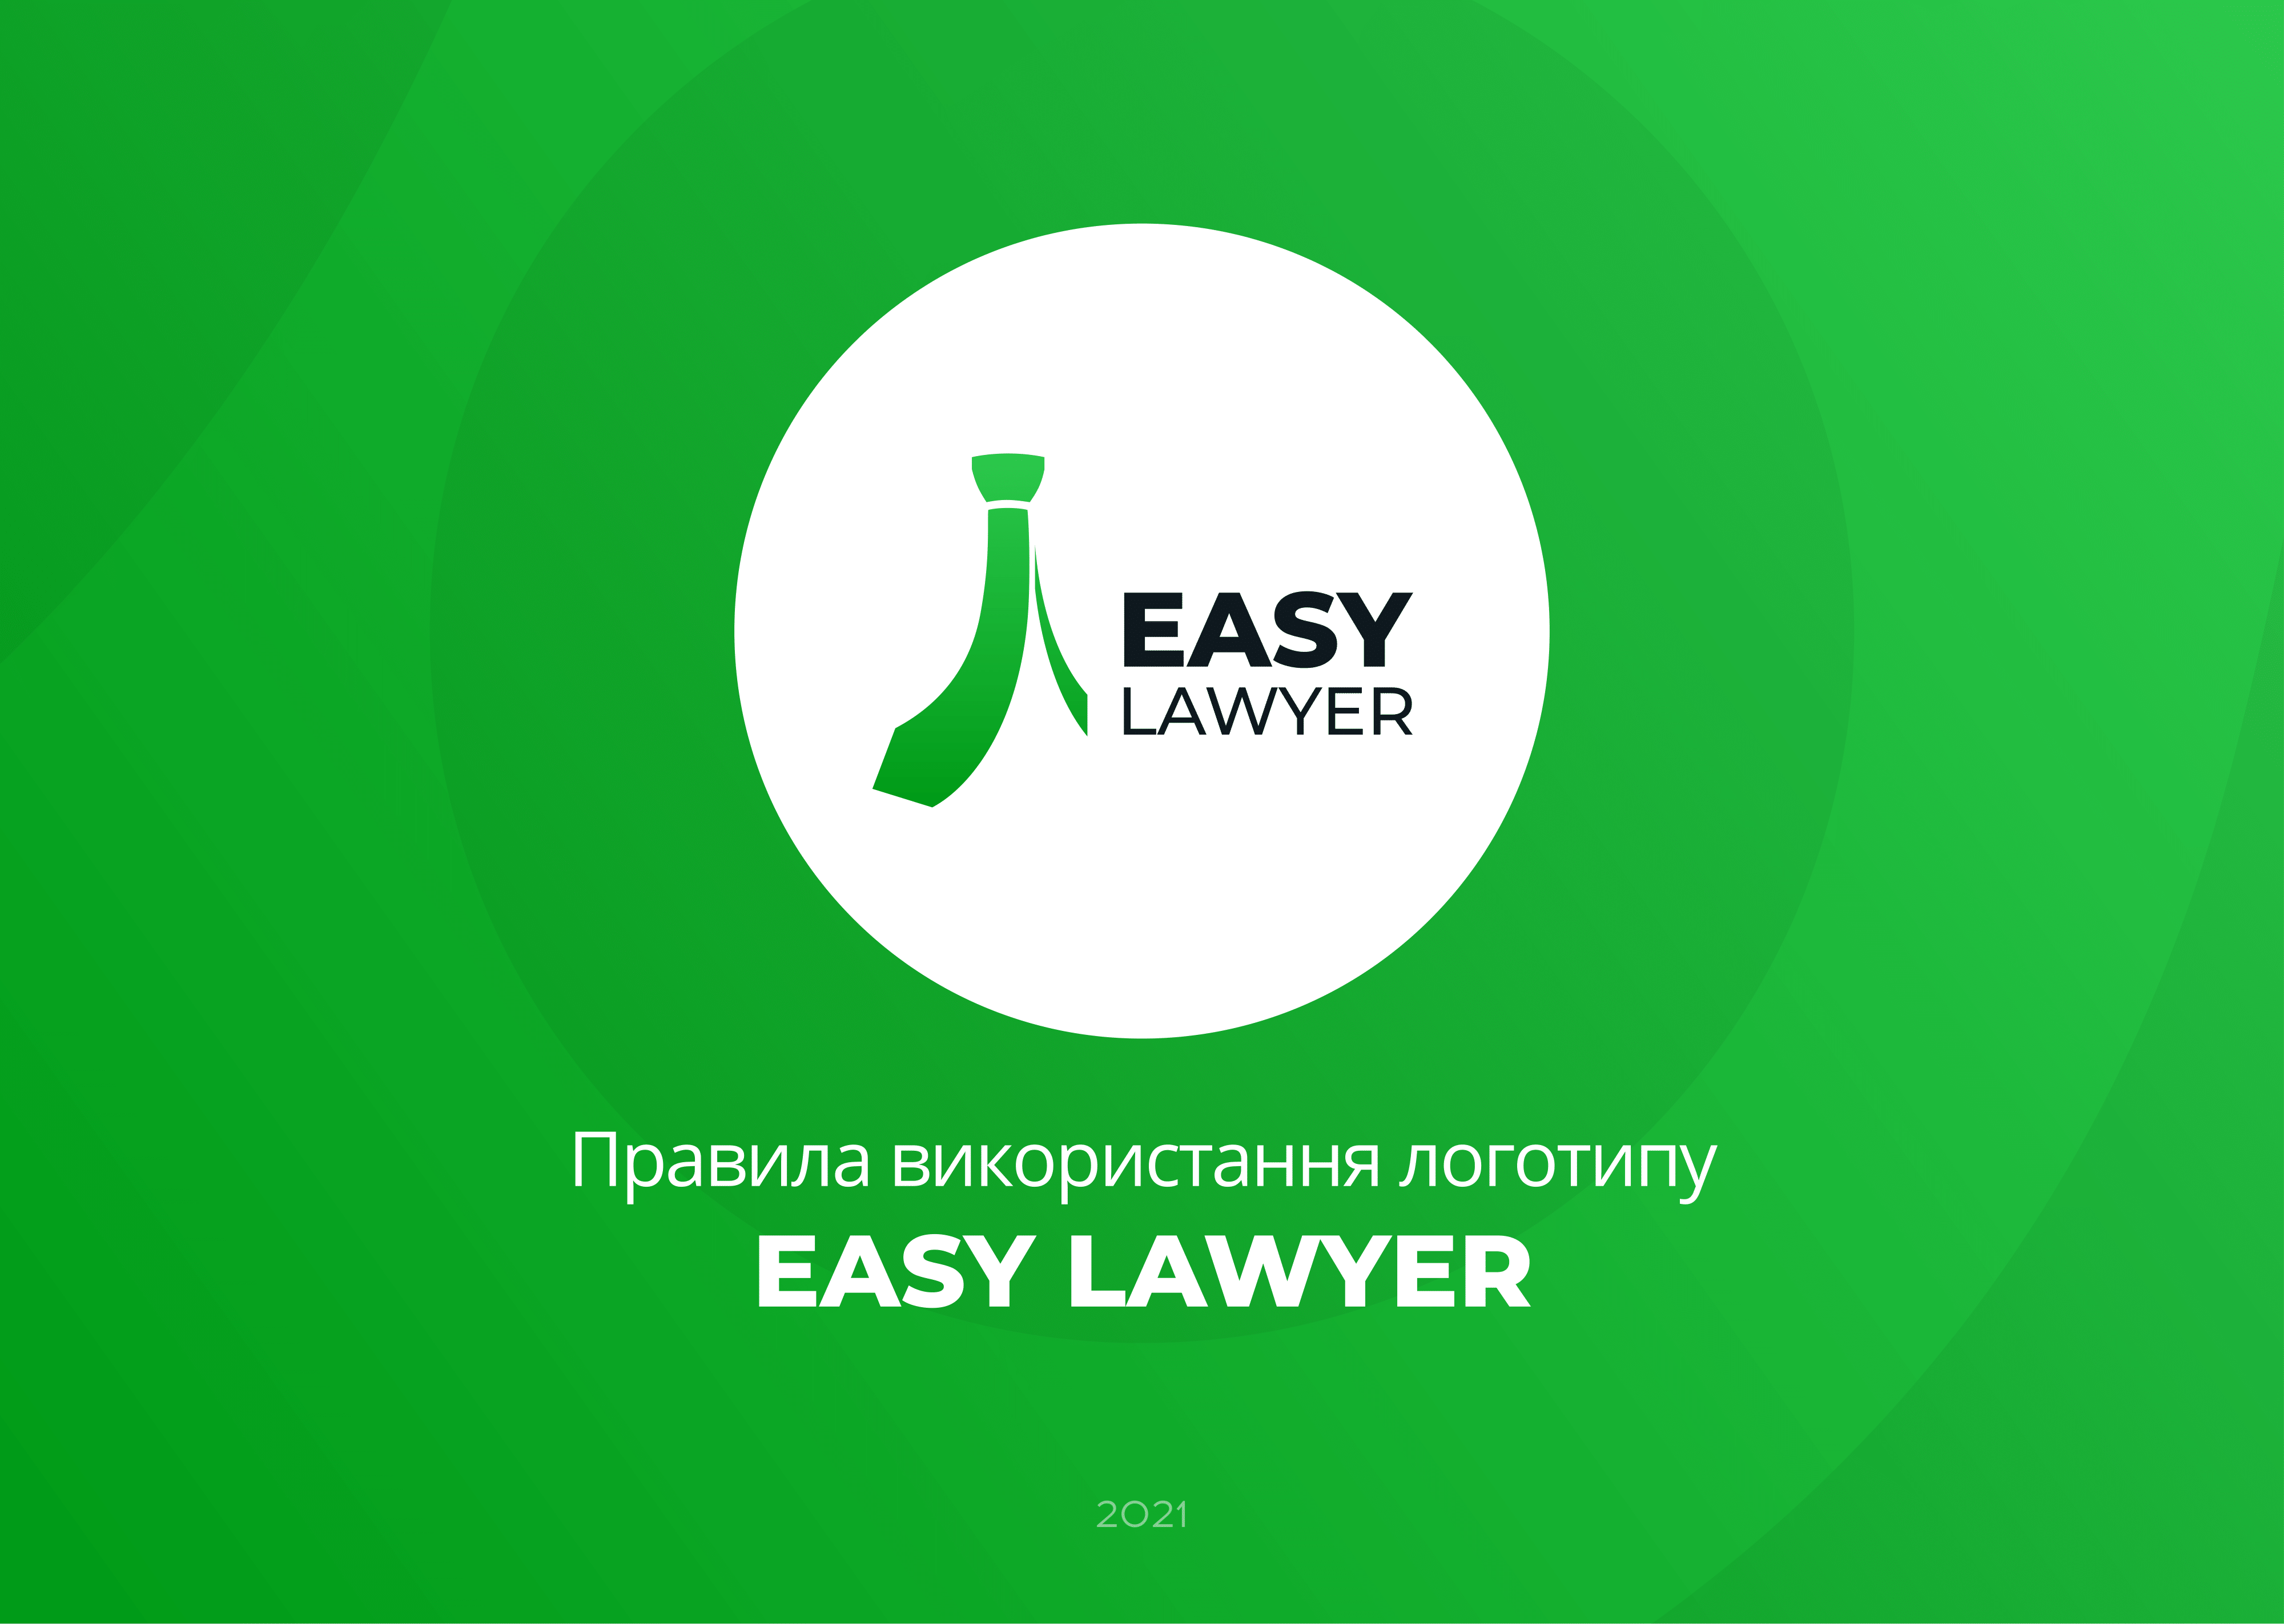 Easy Lawyer (Logobook)-01